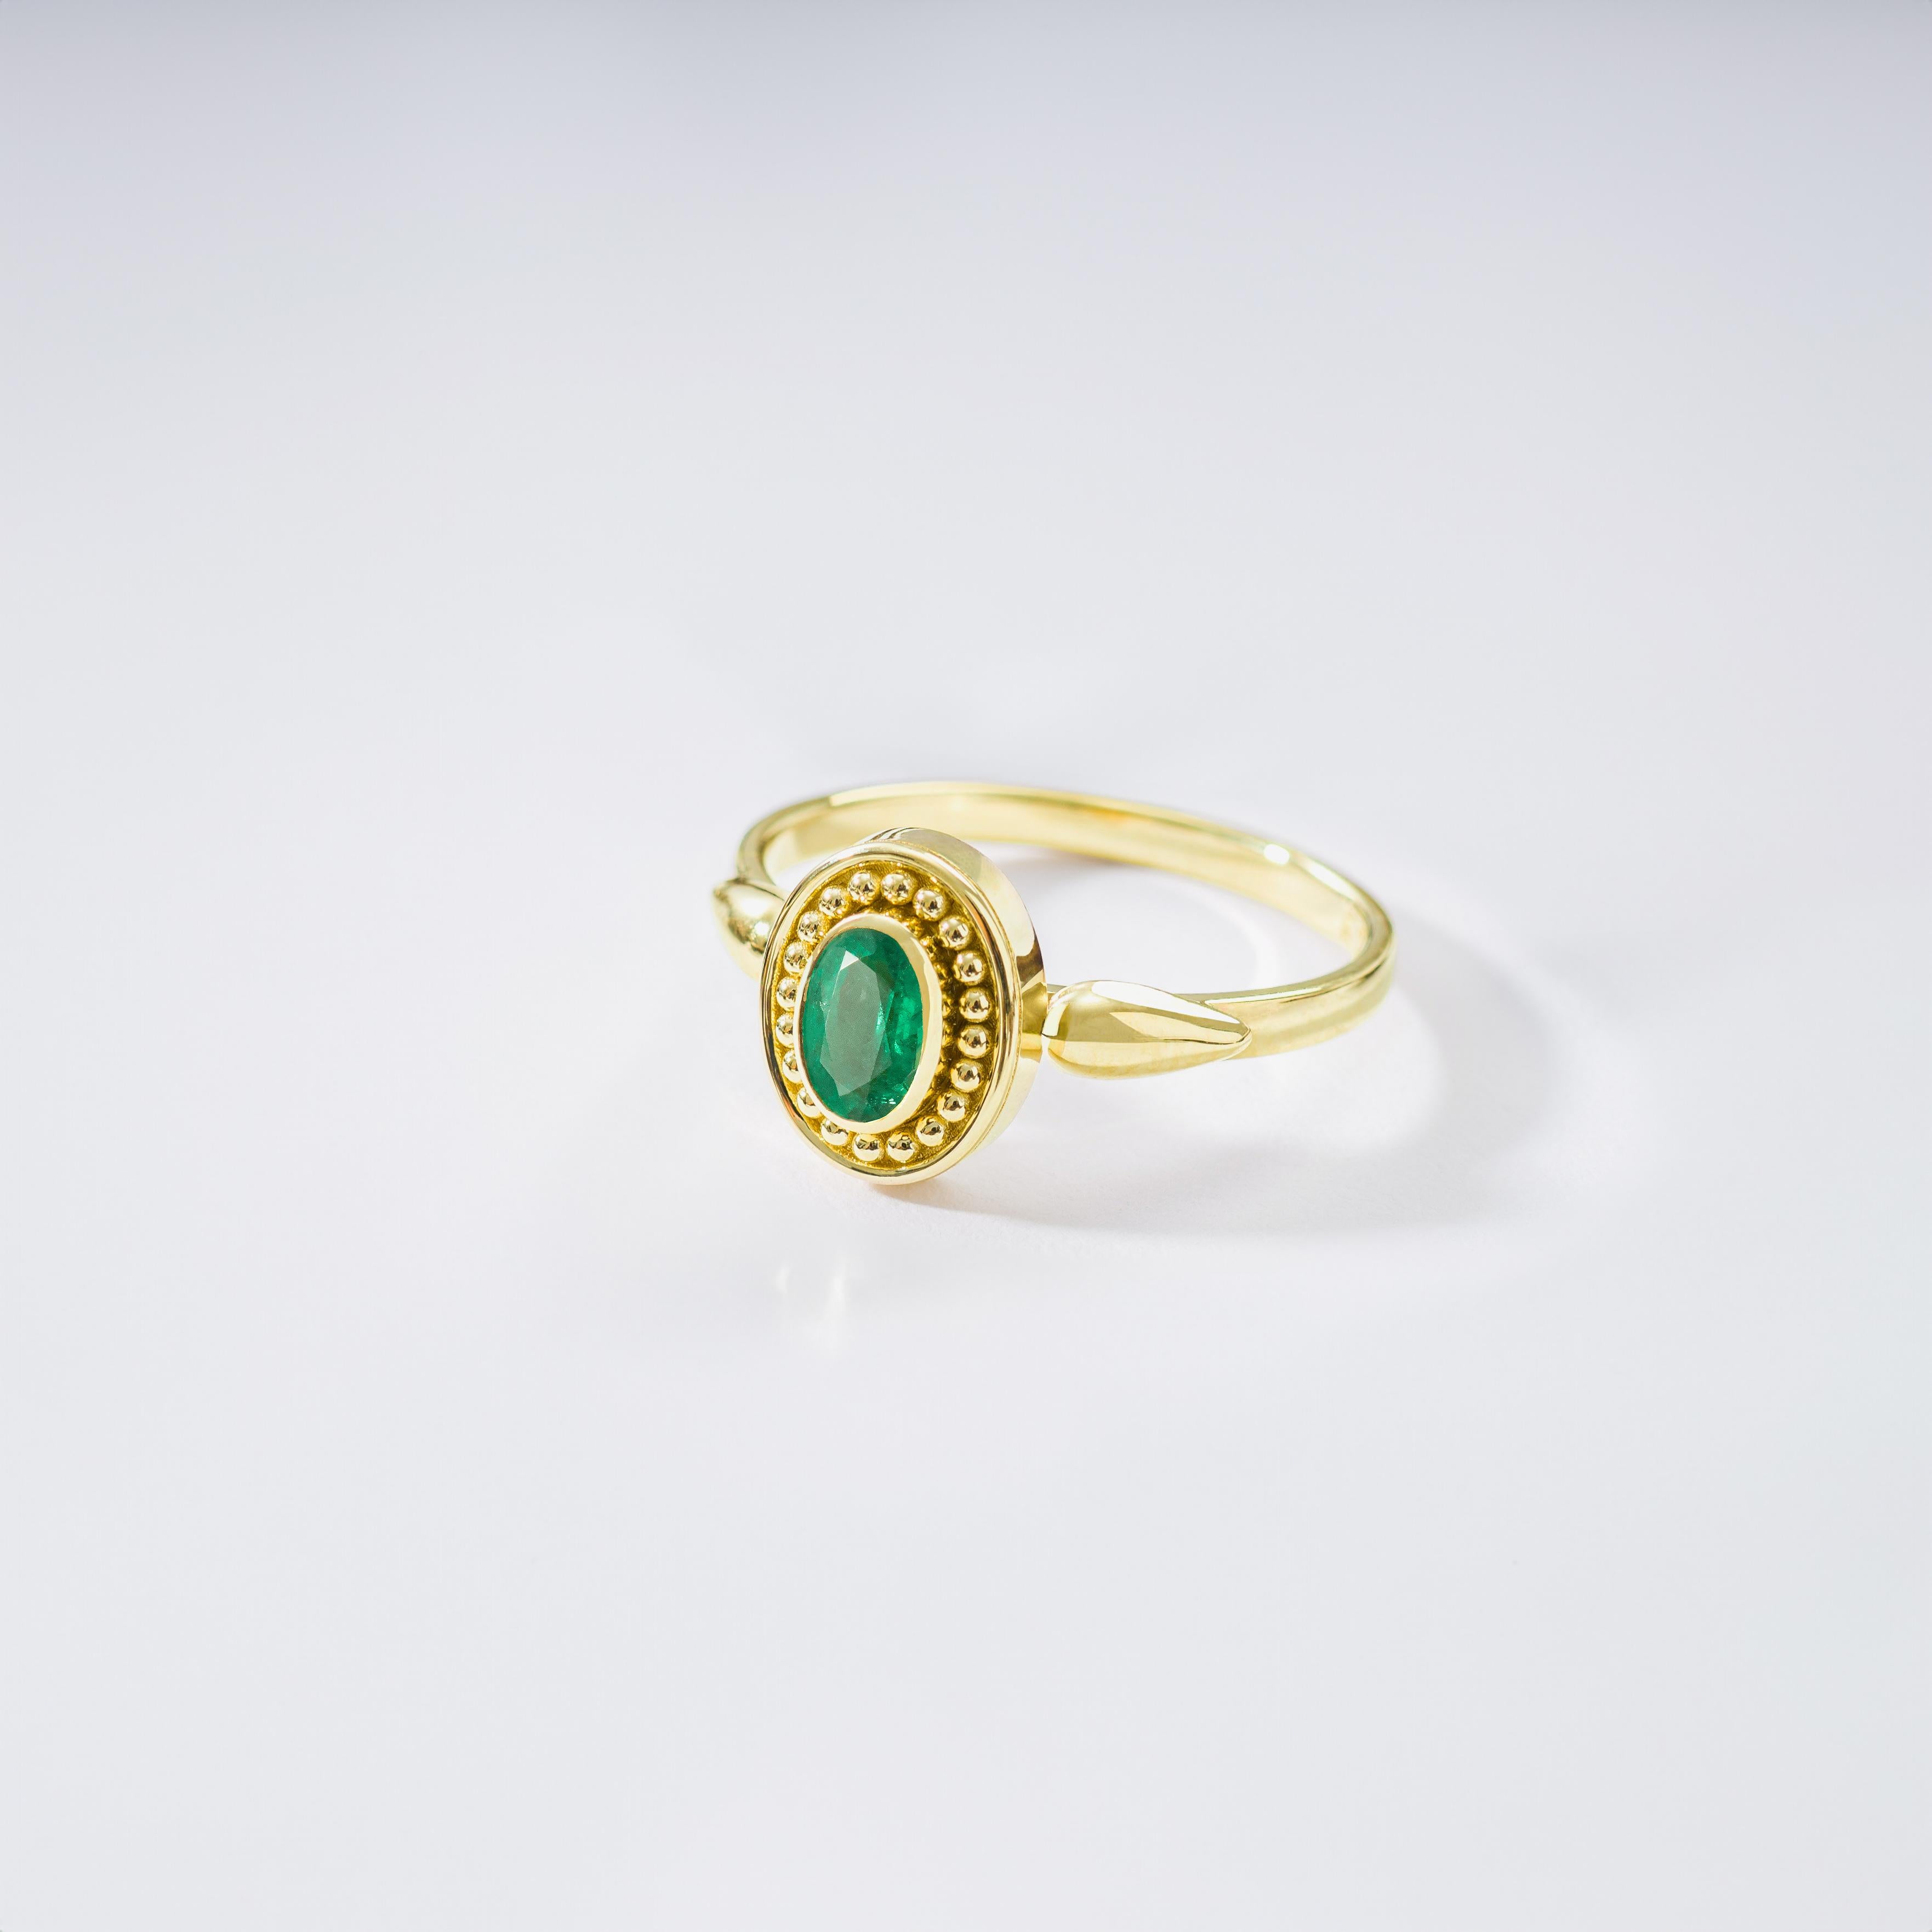 Schmücken Sie Ihre Hand mit unserem exquisiten Goldring, in dem ein ovaler Smaragd als Symbol für natürliche Eleganz und dauerhaften Charme besticht.

100% handgefertigt in unserer Werkstatt.

Metall: 18K Gold
Edelsteine: Smaragd  Gewicht 0,37